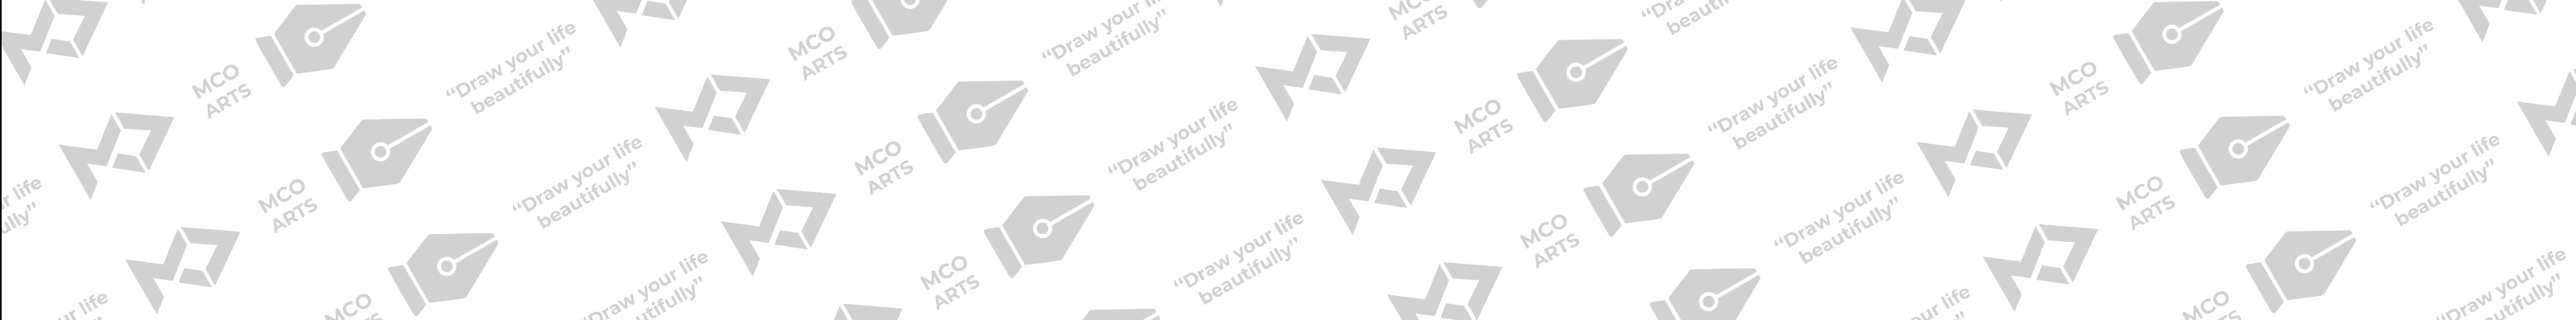 MCO Arts's profile banner